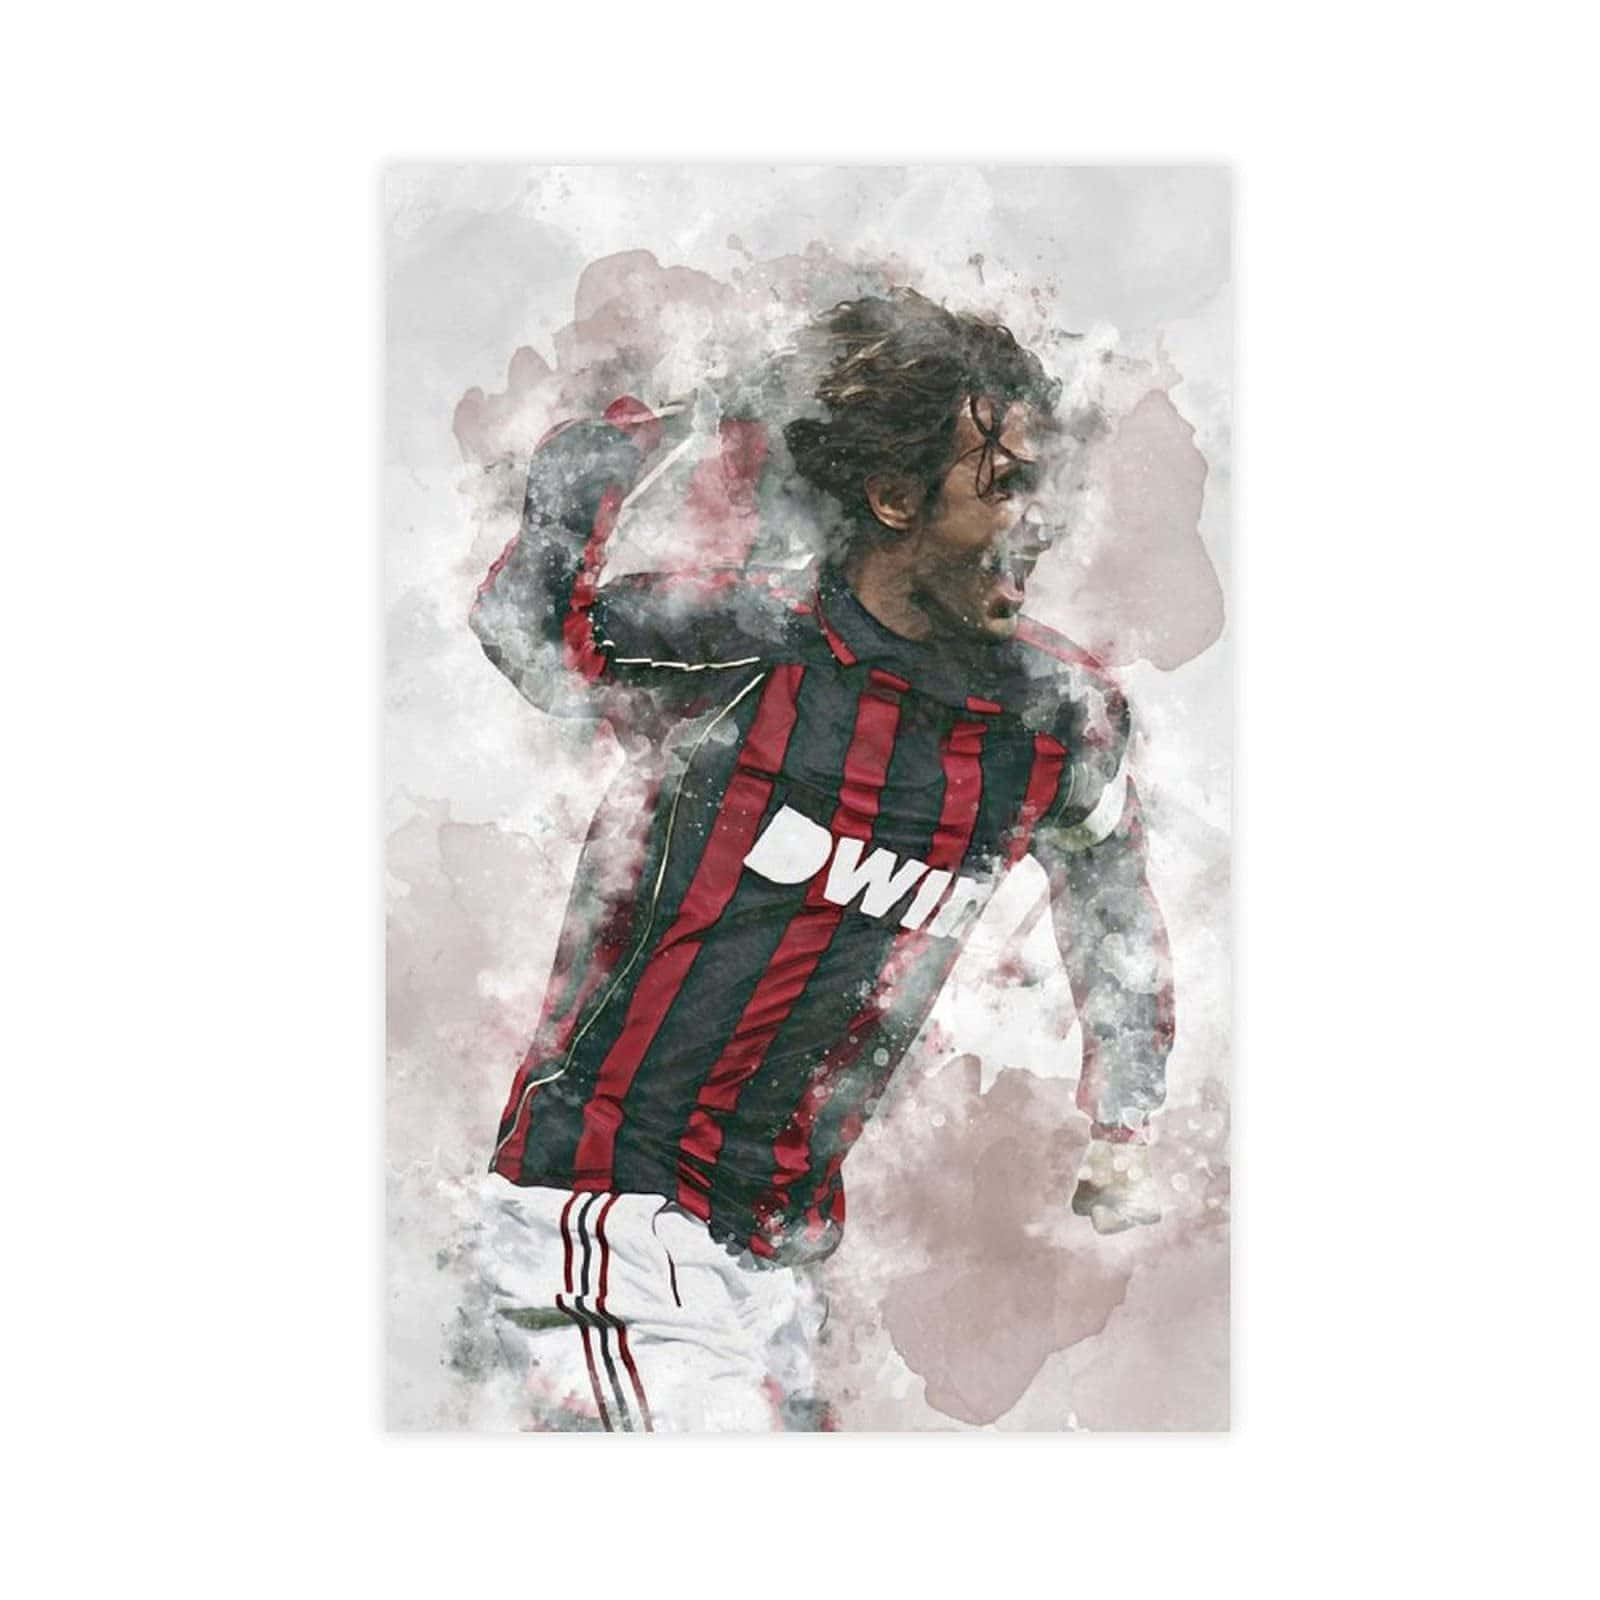 Faded Graphic Paolo Maldini Background